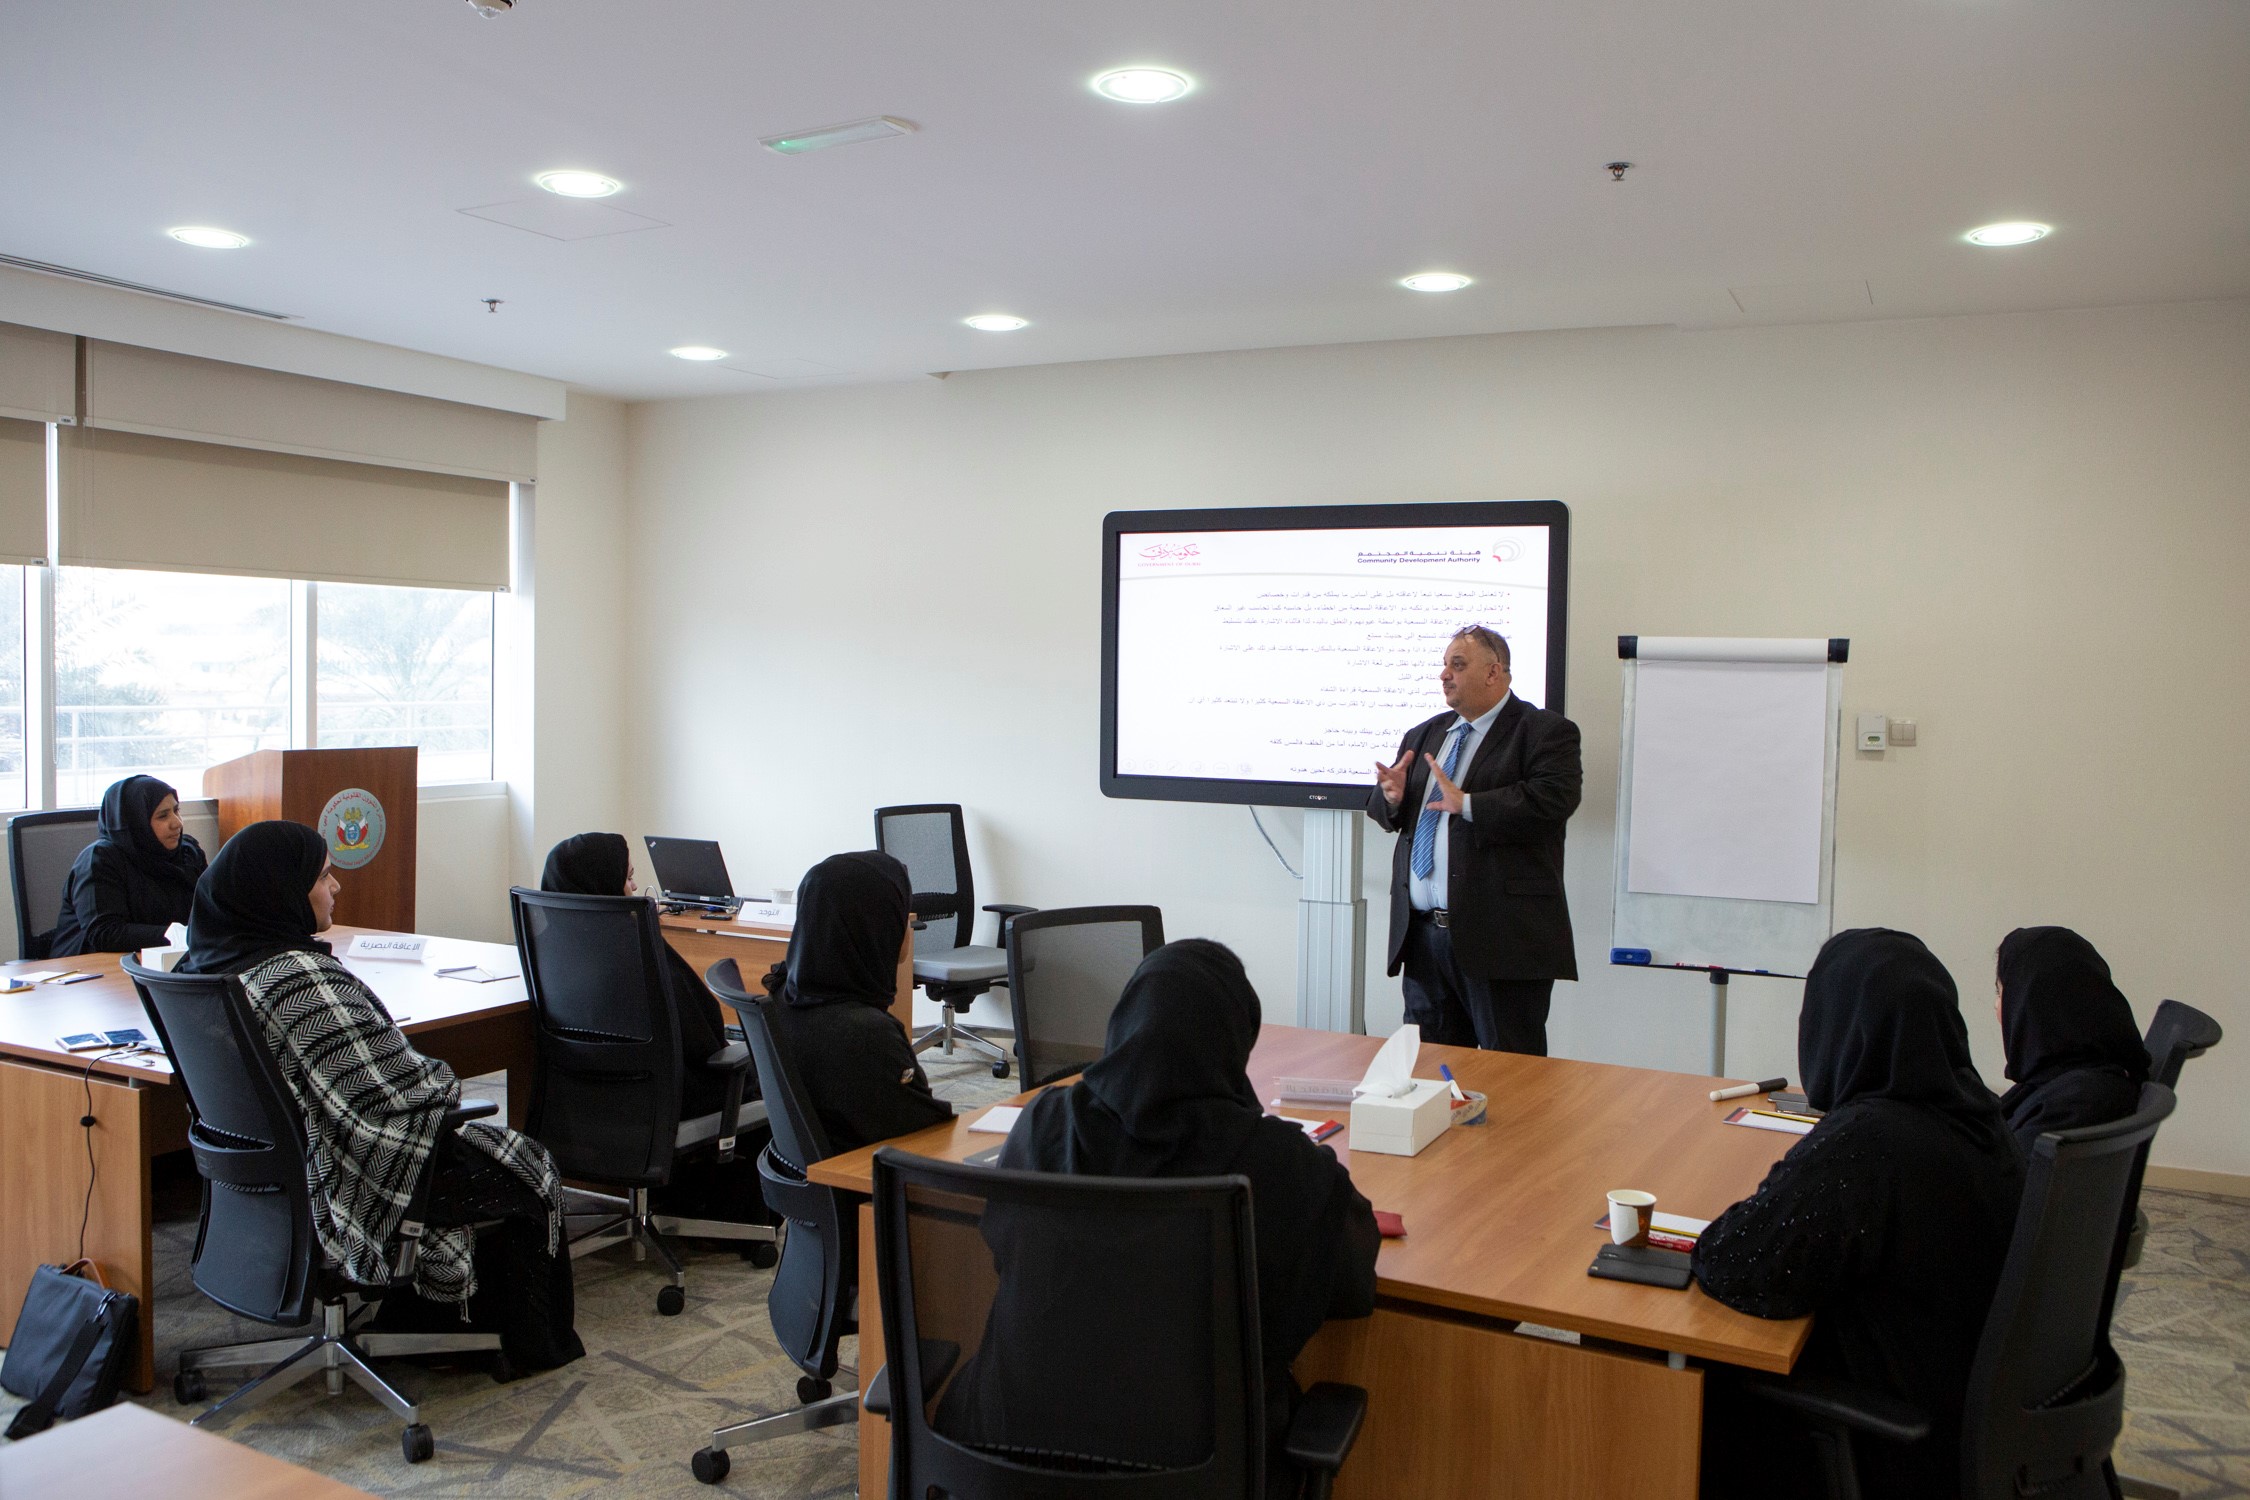 دائرة الشؤون القانونية لحكومة دبي تنظم دورة تدريبية لموظفيها حول استخدام لغة الإشارة